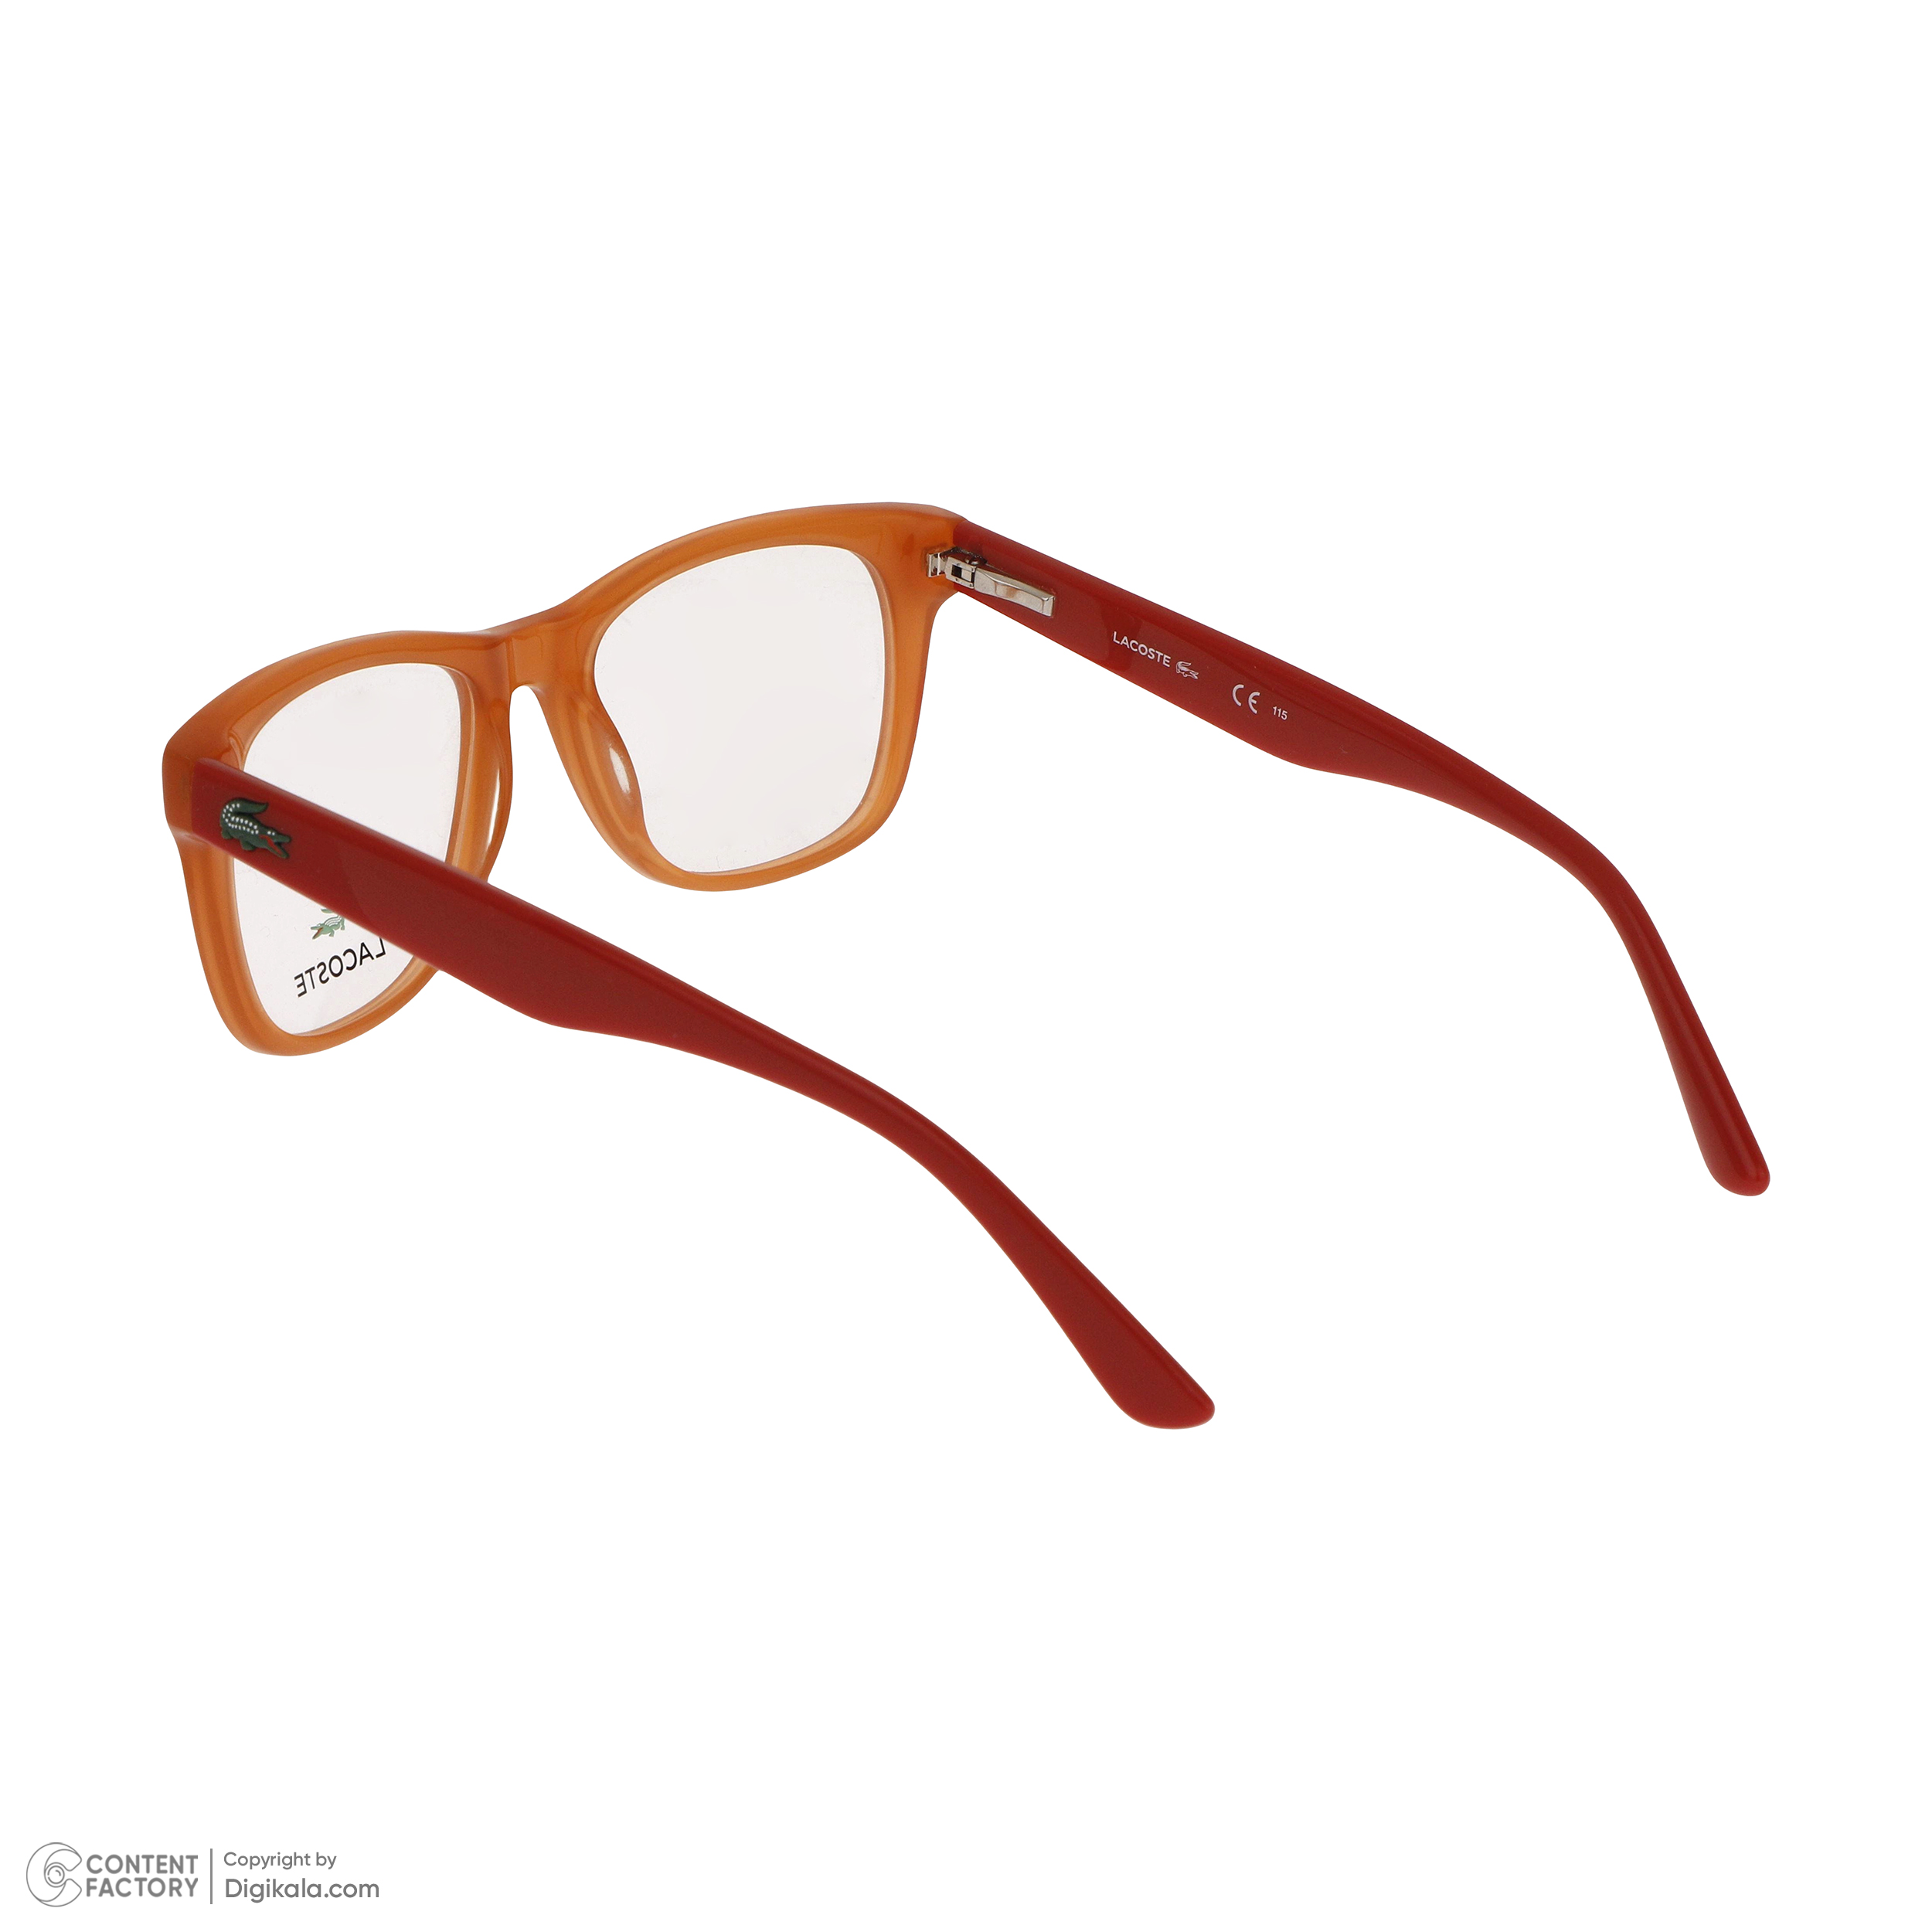 فریم عینک طبی زنانه لاگوست مدل 3614-800 -  - 5